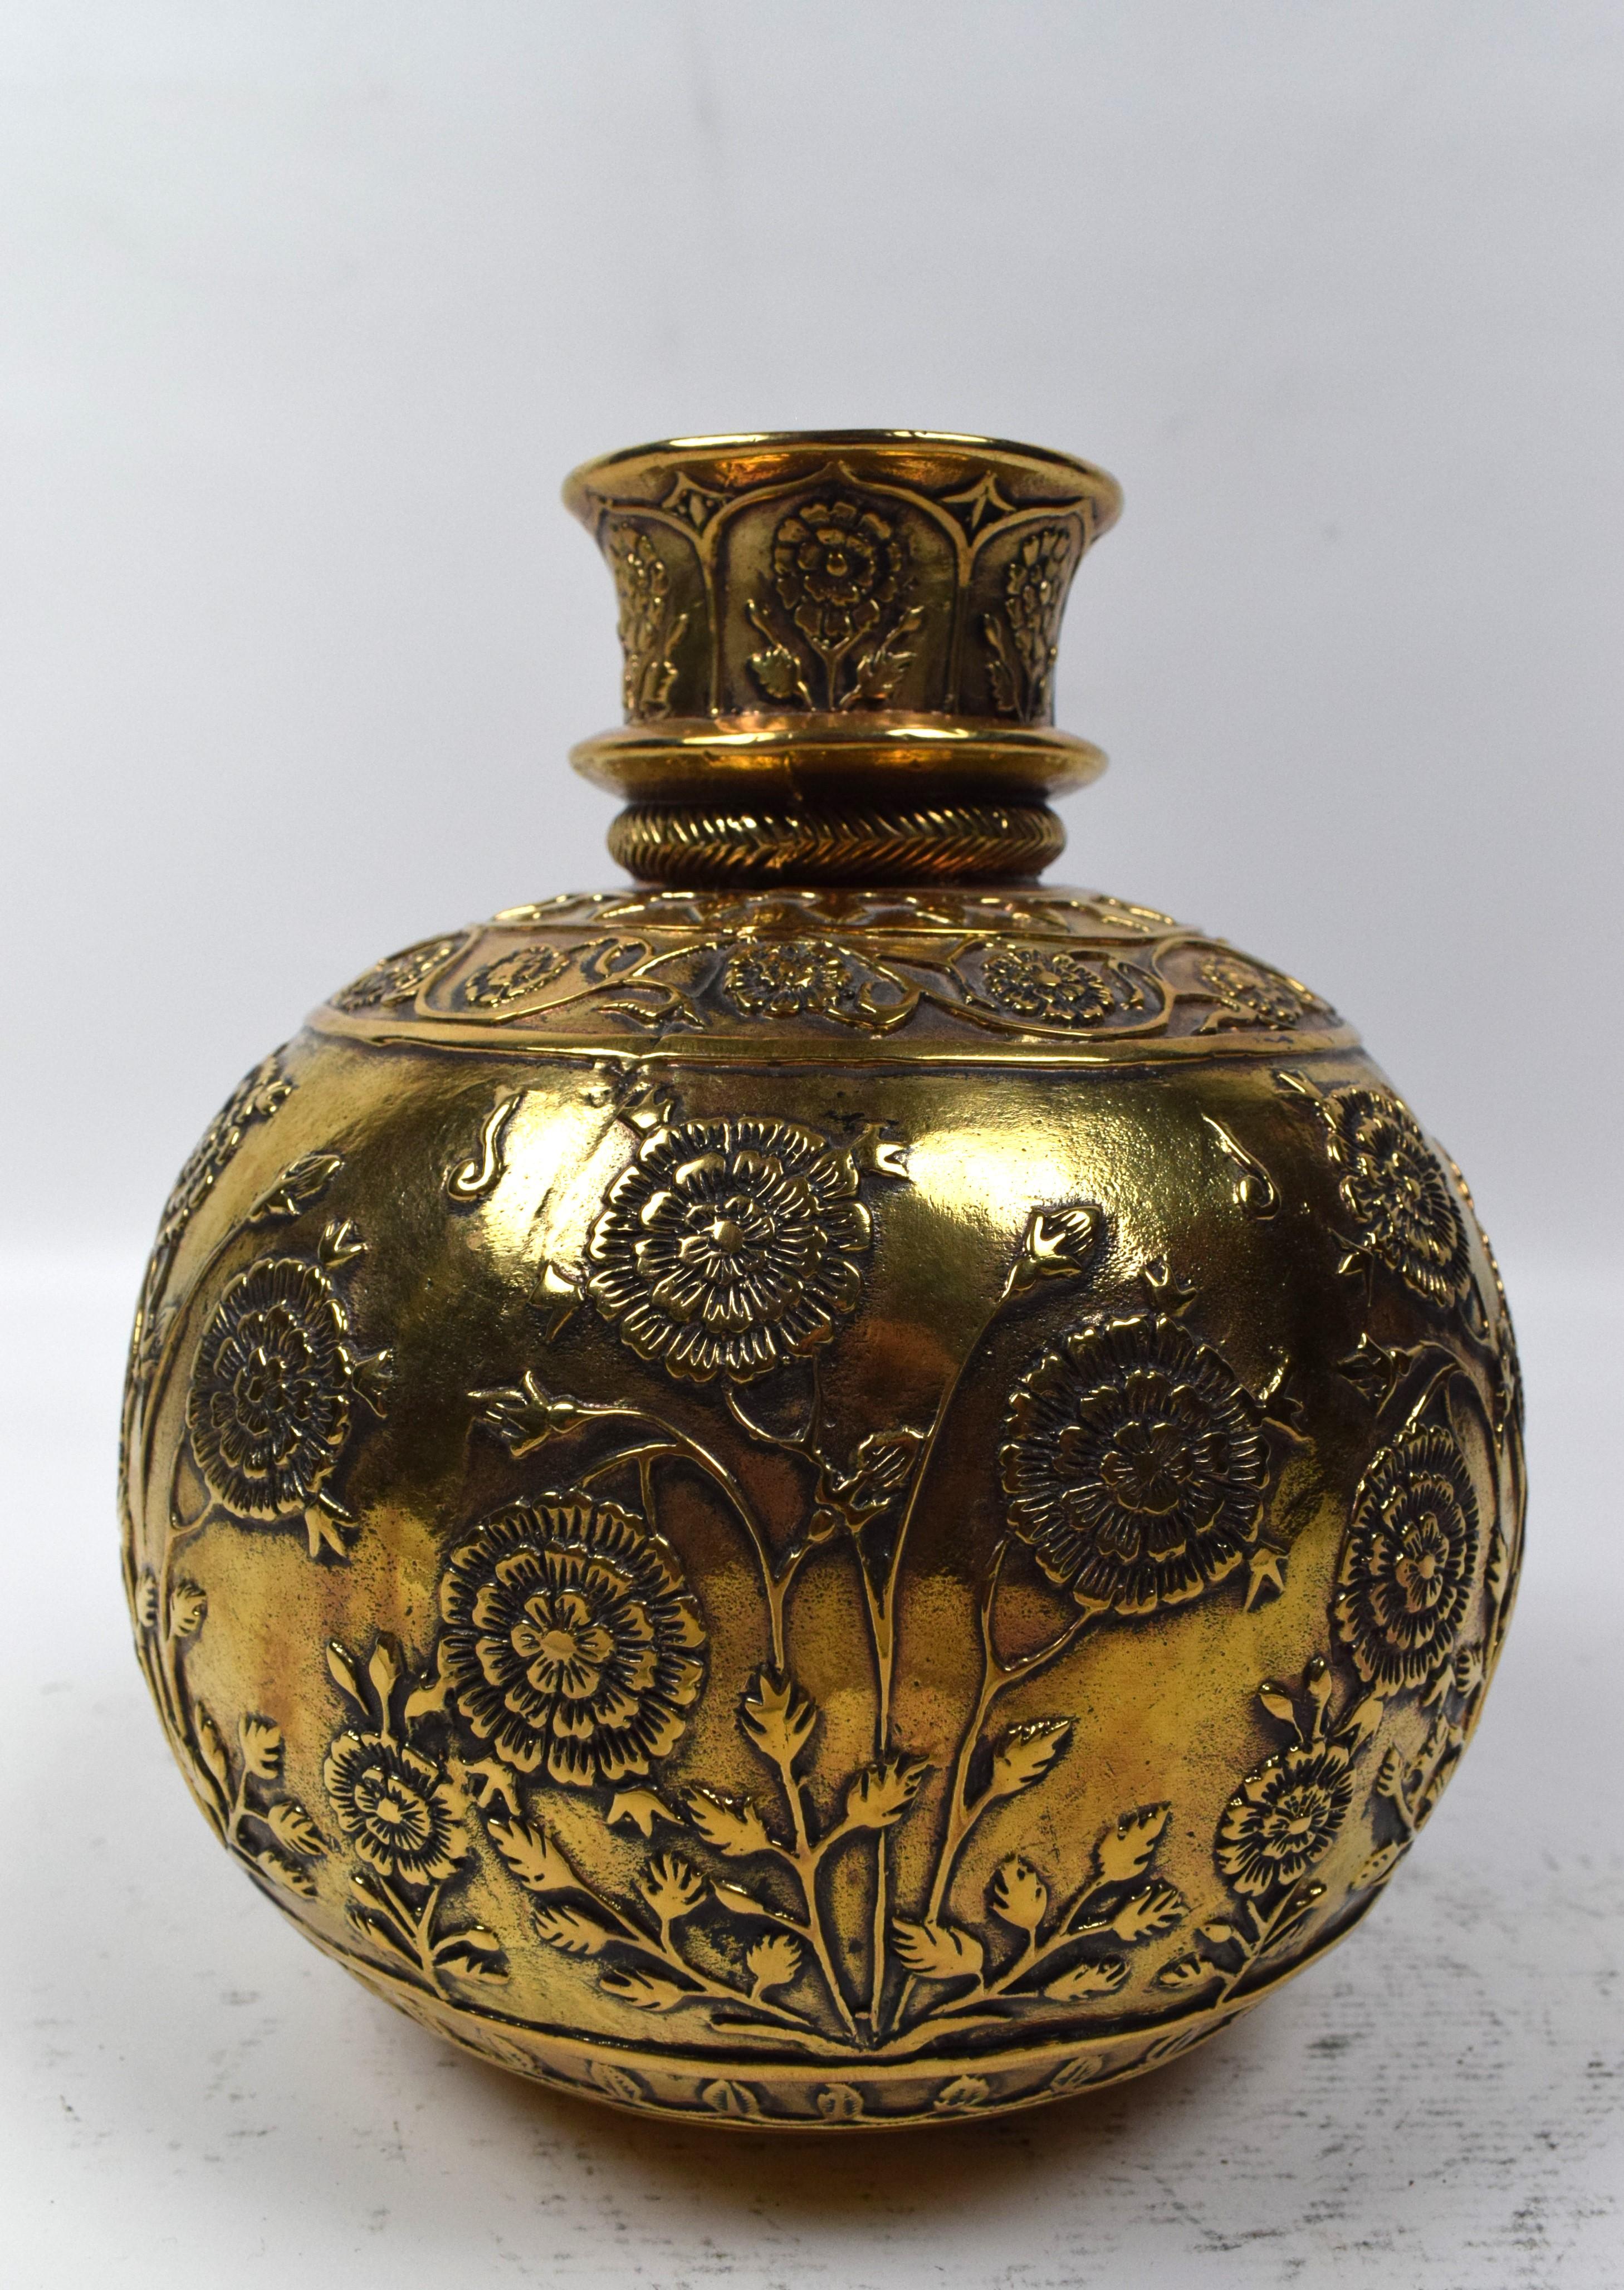 Le narguilé Mughal en laiton est doté d'une base en laiton magnifiquement gravée et ornée de motifs floraux complexes.  motifs géométriques. La base est une œuvre d'art, mettant en valeur l'artisanat exquis et le souci du détail caractéristiques du